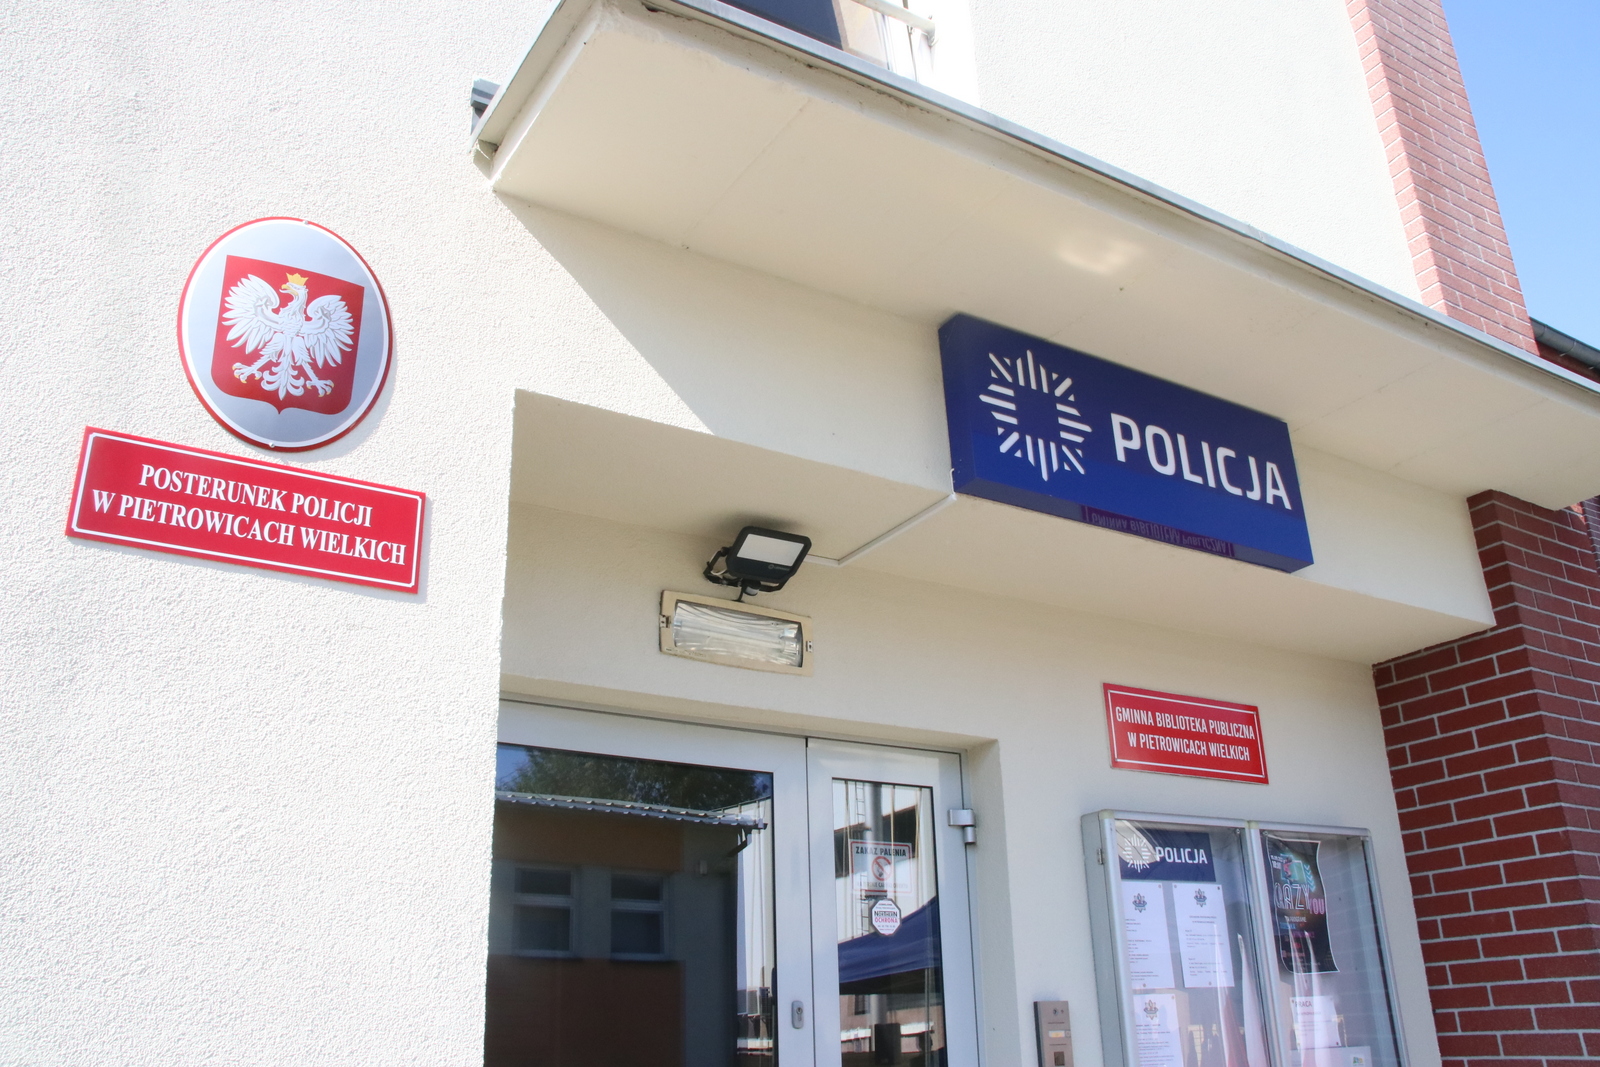 Posterunek Policji w Pietrowicach Wielkich mieści się na pierwszym piętrze centrum społeczno-kulturalnego